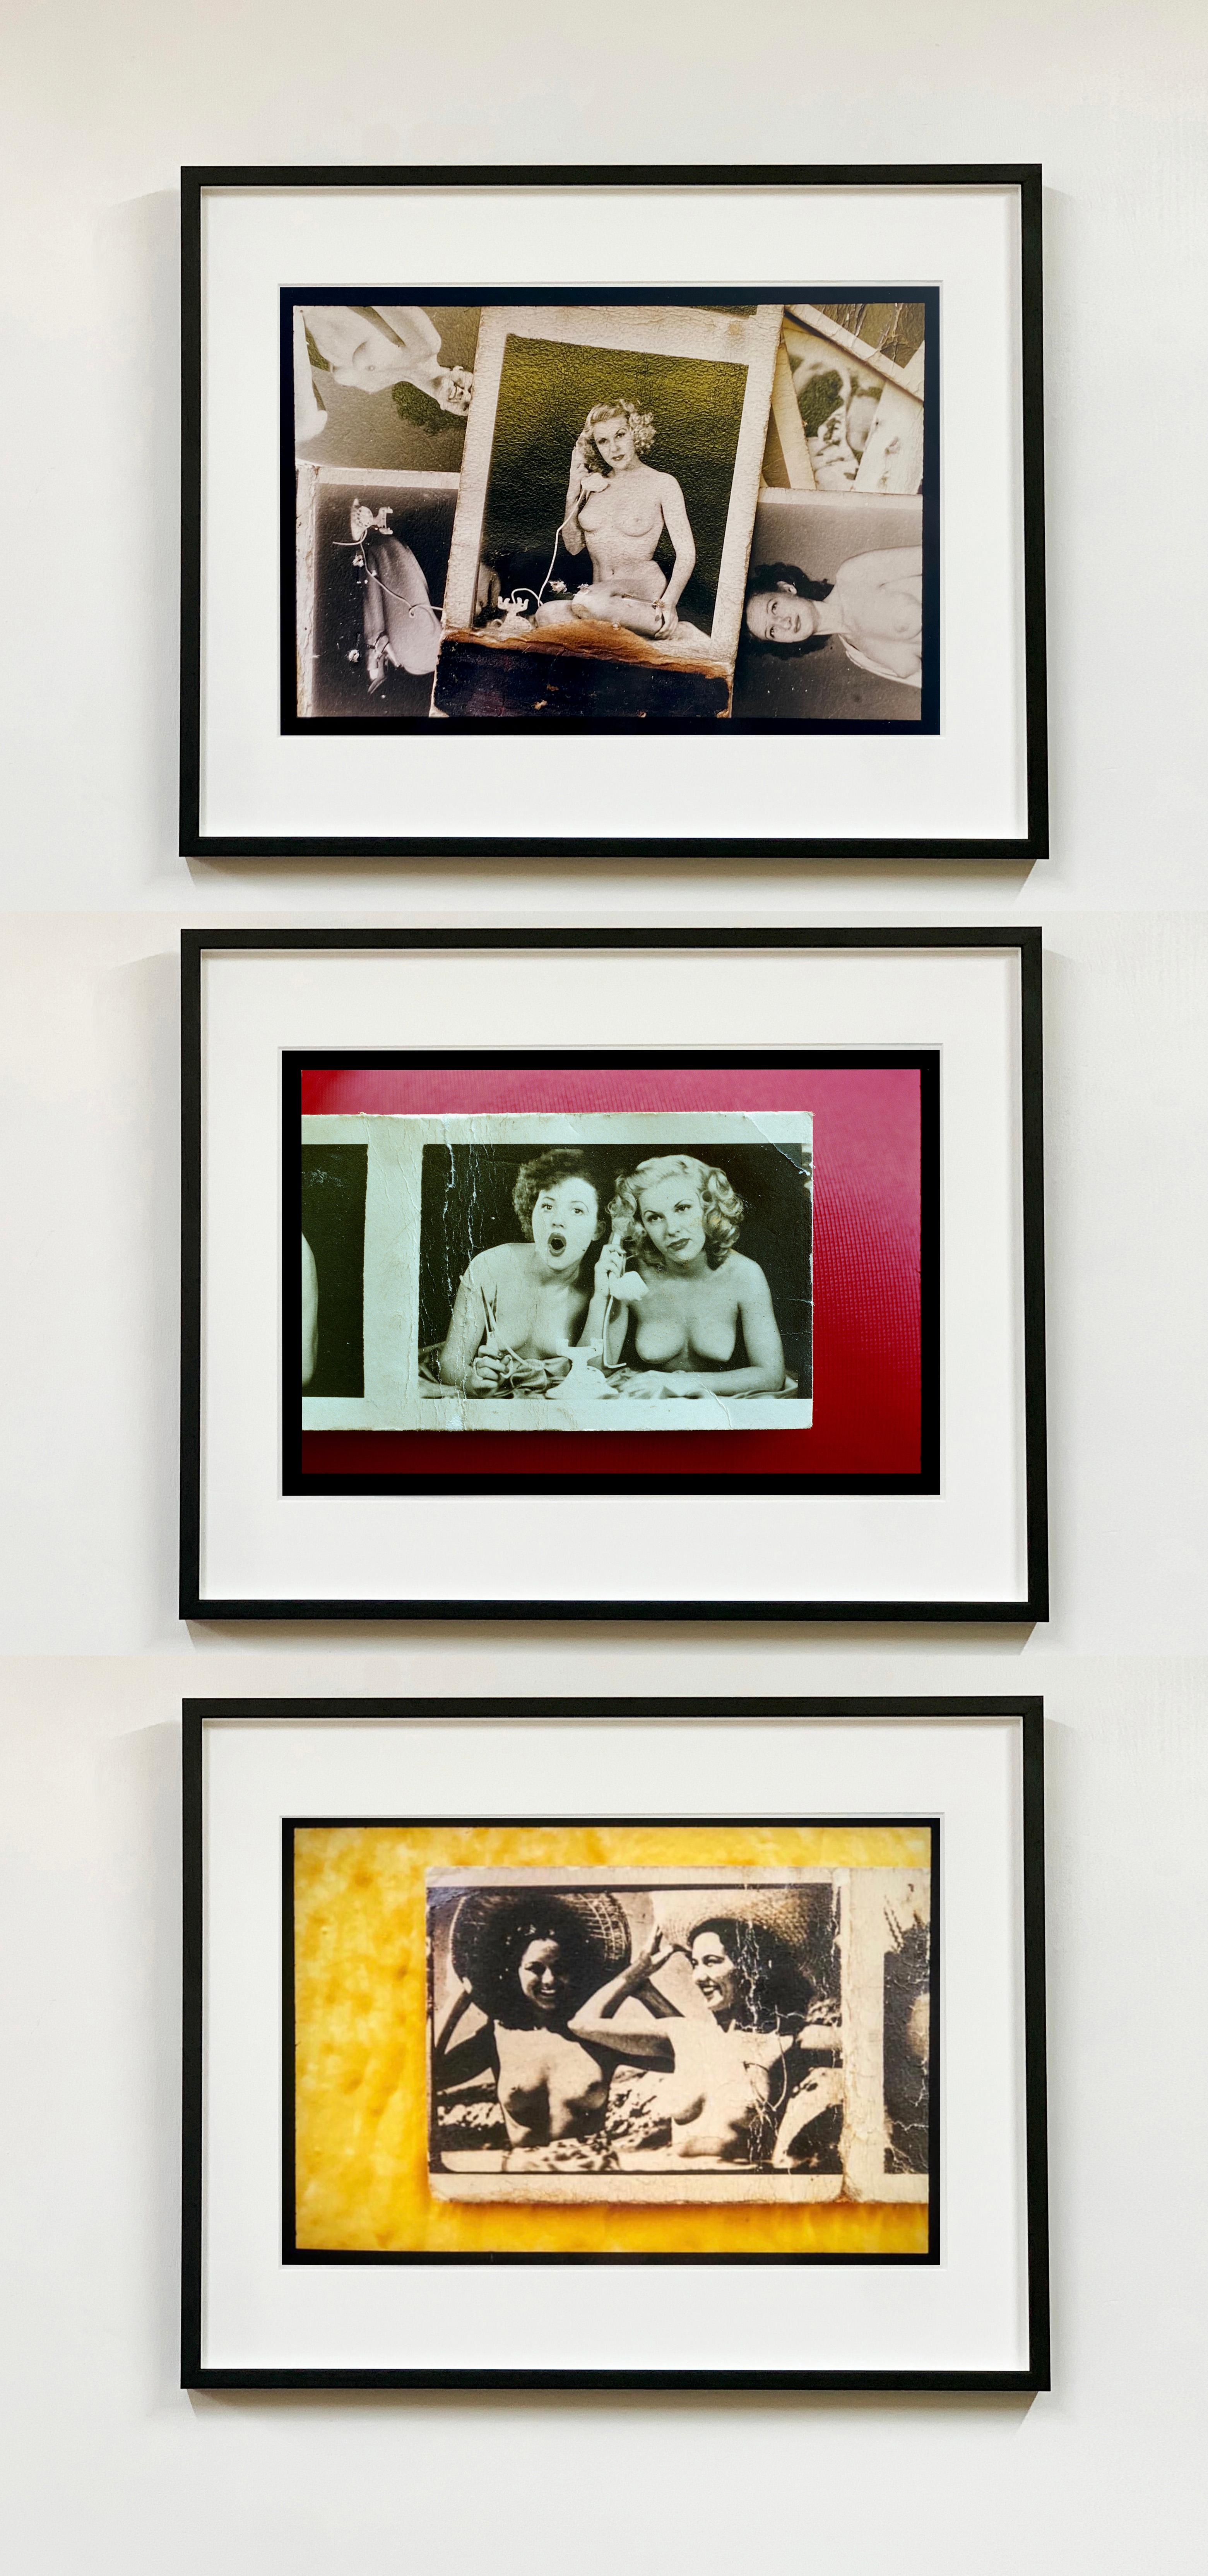 Jersey Girls Gold, Foto aus Richard Heeps Jersey Shore-Serie.
Vintage-Streichholzbriefchen vom New Yorker Chelsea Flea Market, die Aktfotos aus den 1940er Jahren zeigen, wurden von Richard Heeps in dieser Farbfotografie neu interpretiert.

Dieses